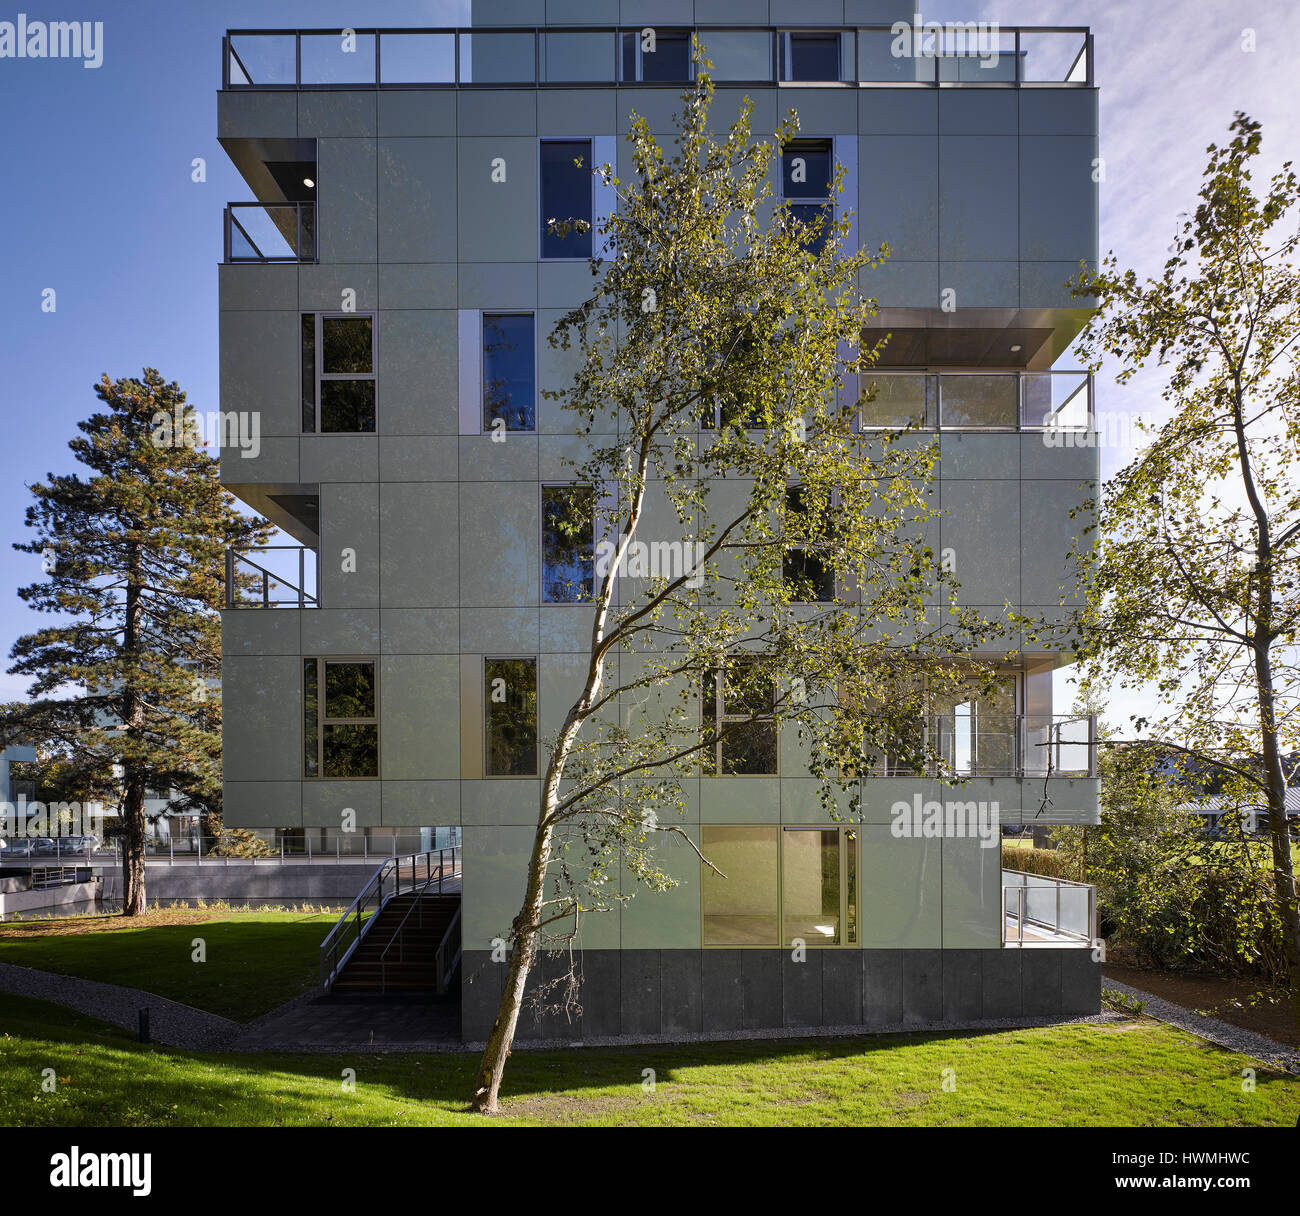 Ansicht der Außenfassade Landschaft. Dunluce Apartments, Ballsbridge, Irland. Architekt: Derek Tynan Architekten, 2016. Stockfoto